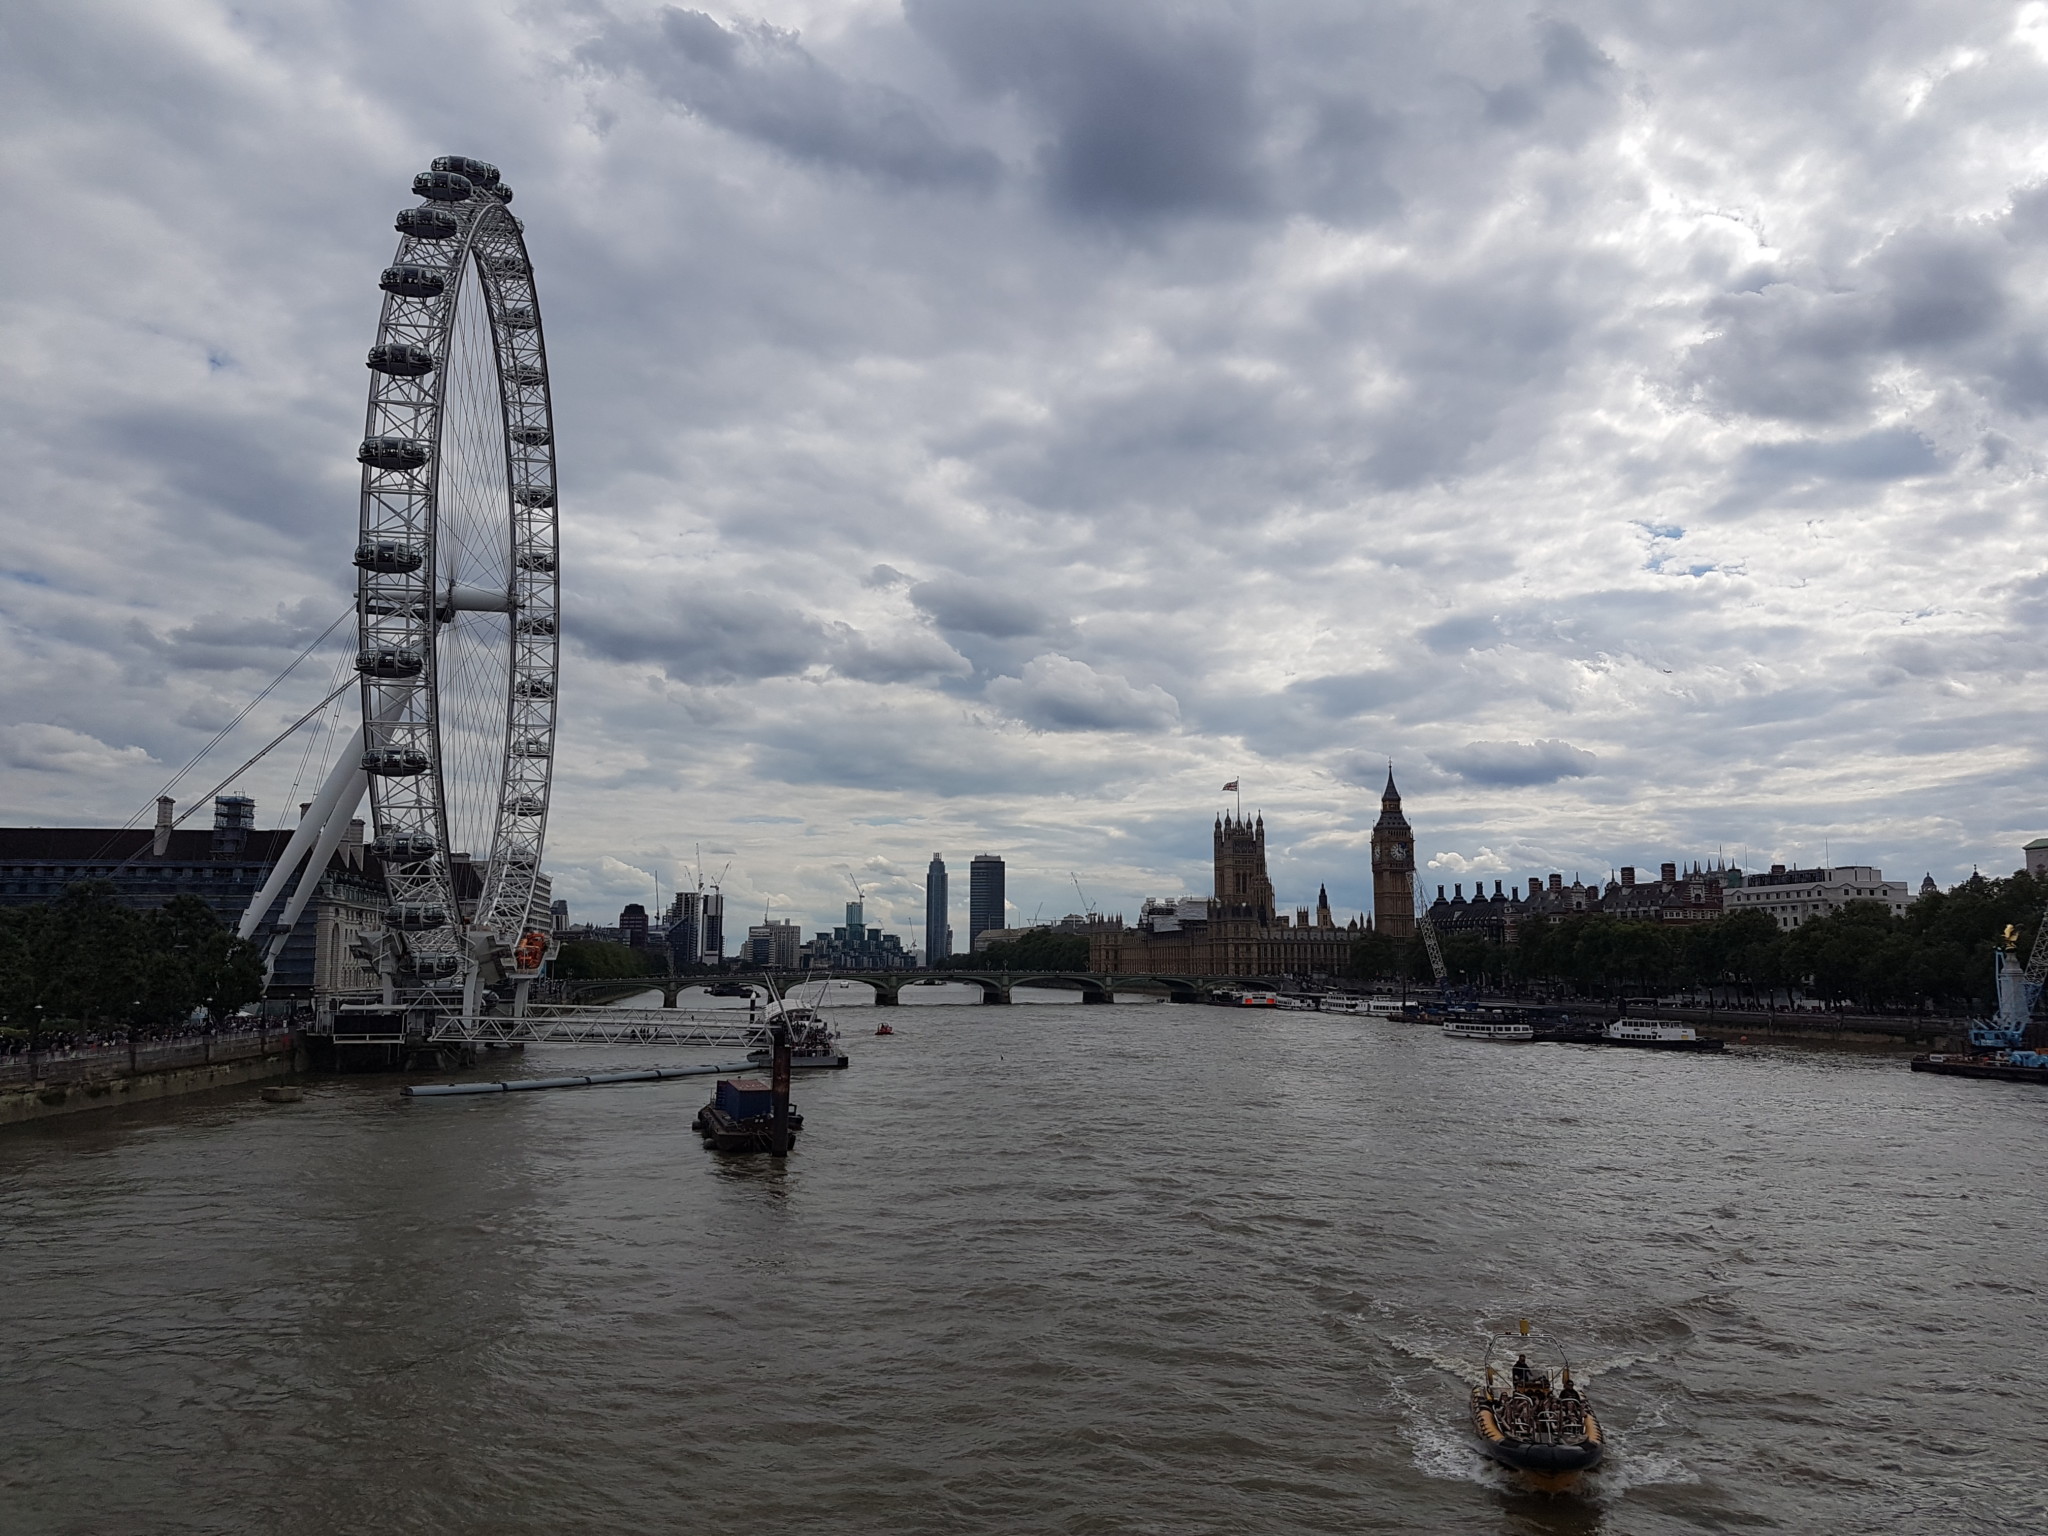 London Eye on the Thames